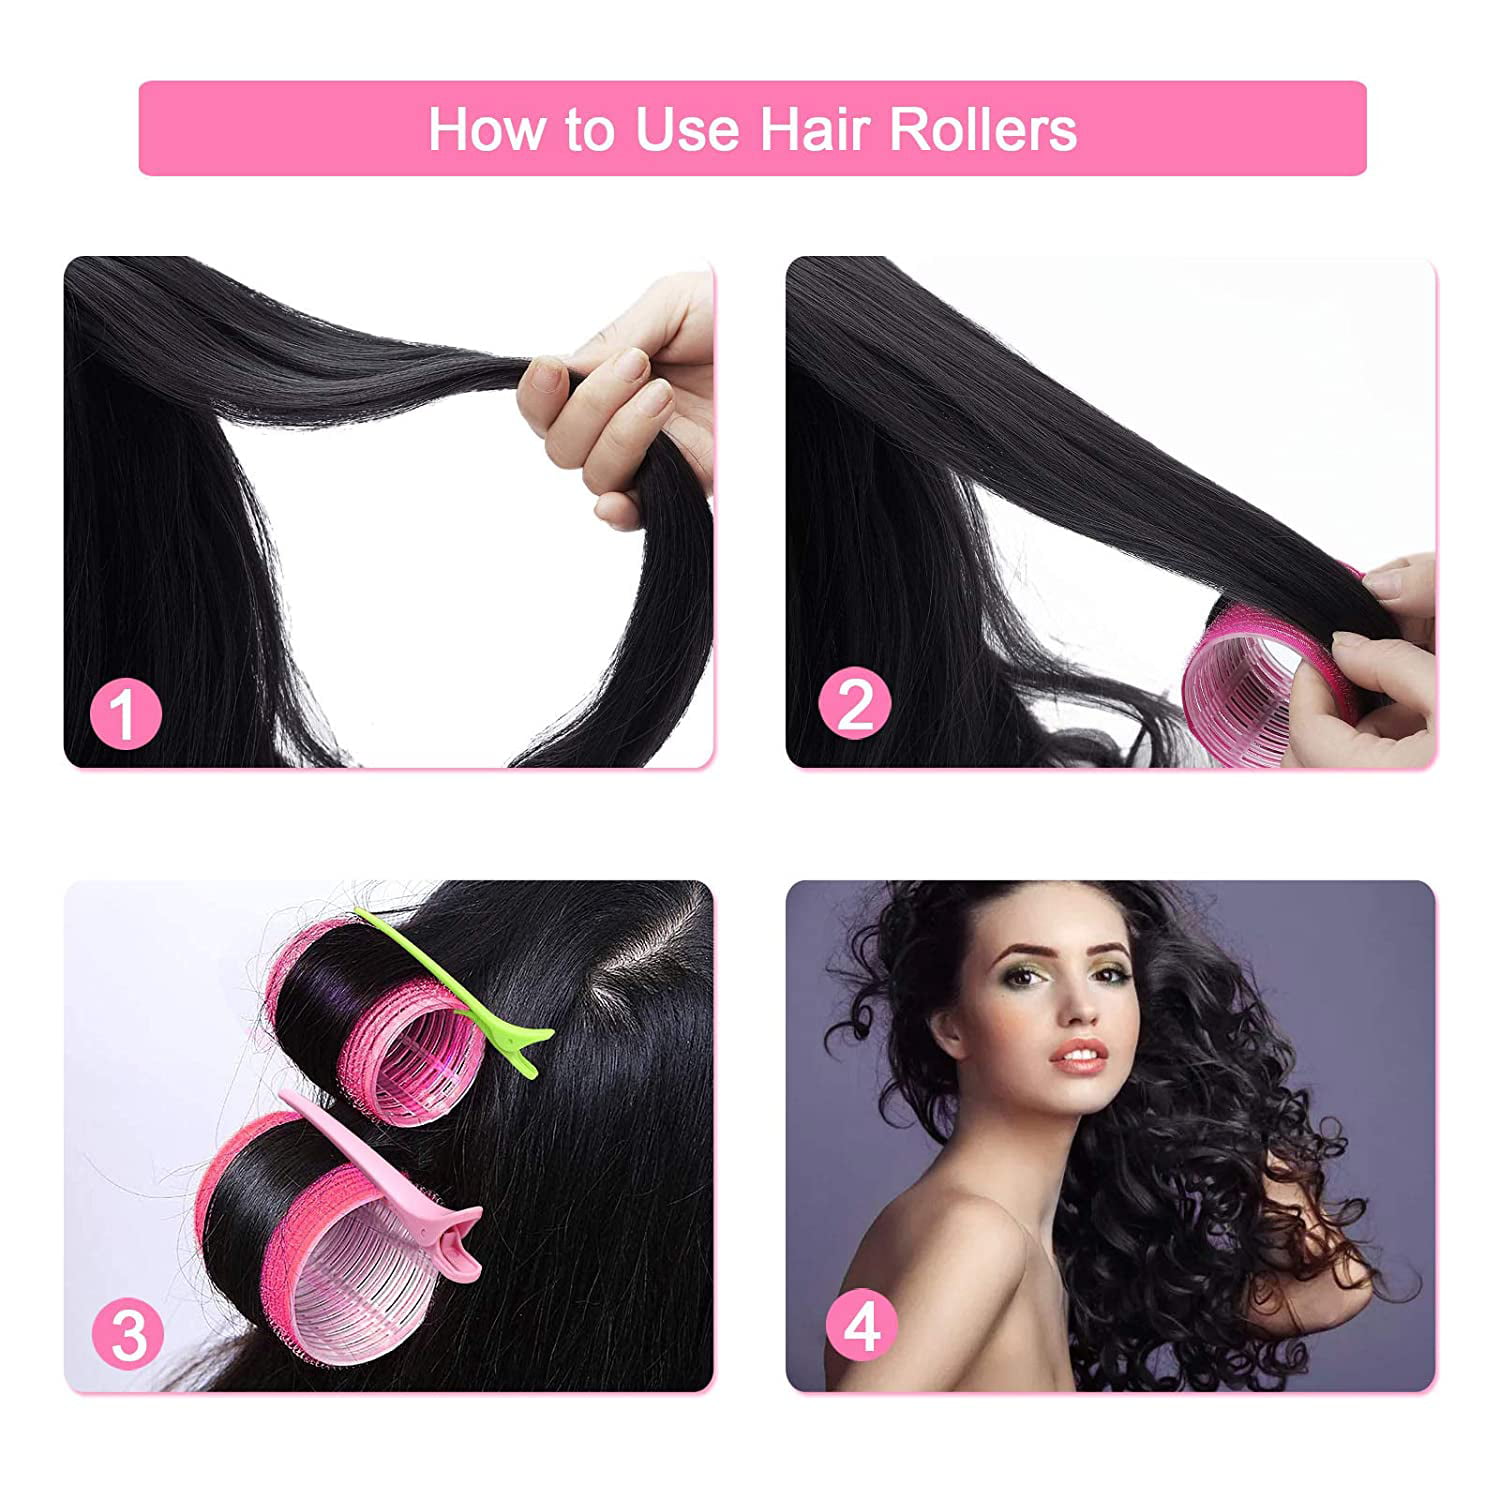 2PCS Hair Roller Bangs Hair Curlers For Double-Layer Bangs Self-Adhesive  Hair Bangs Curling Styling Tools Hairdressing Curlers For Styling Curtain  Bangs And Layers | Double-layer Bangs Hair Curlers Roller Hair Styling  Toolspink4sets) |